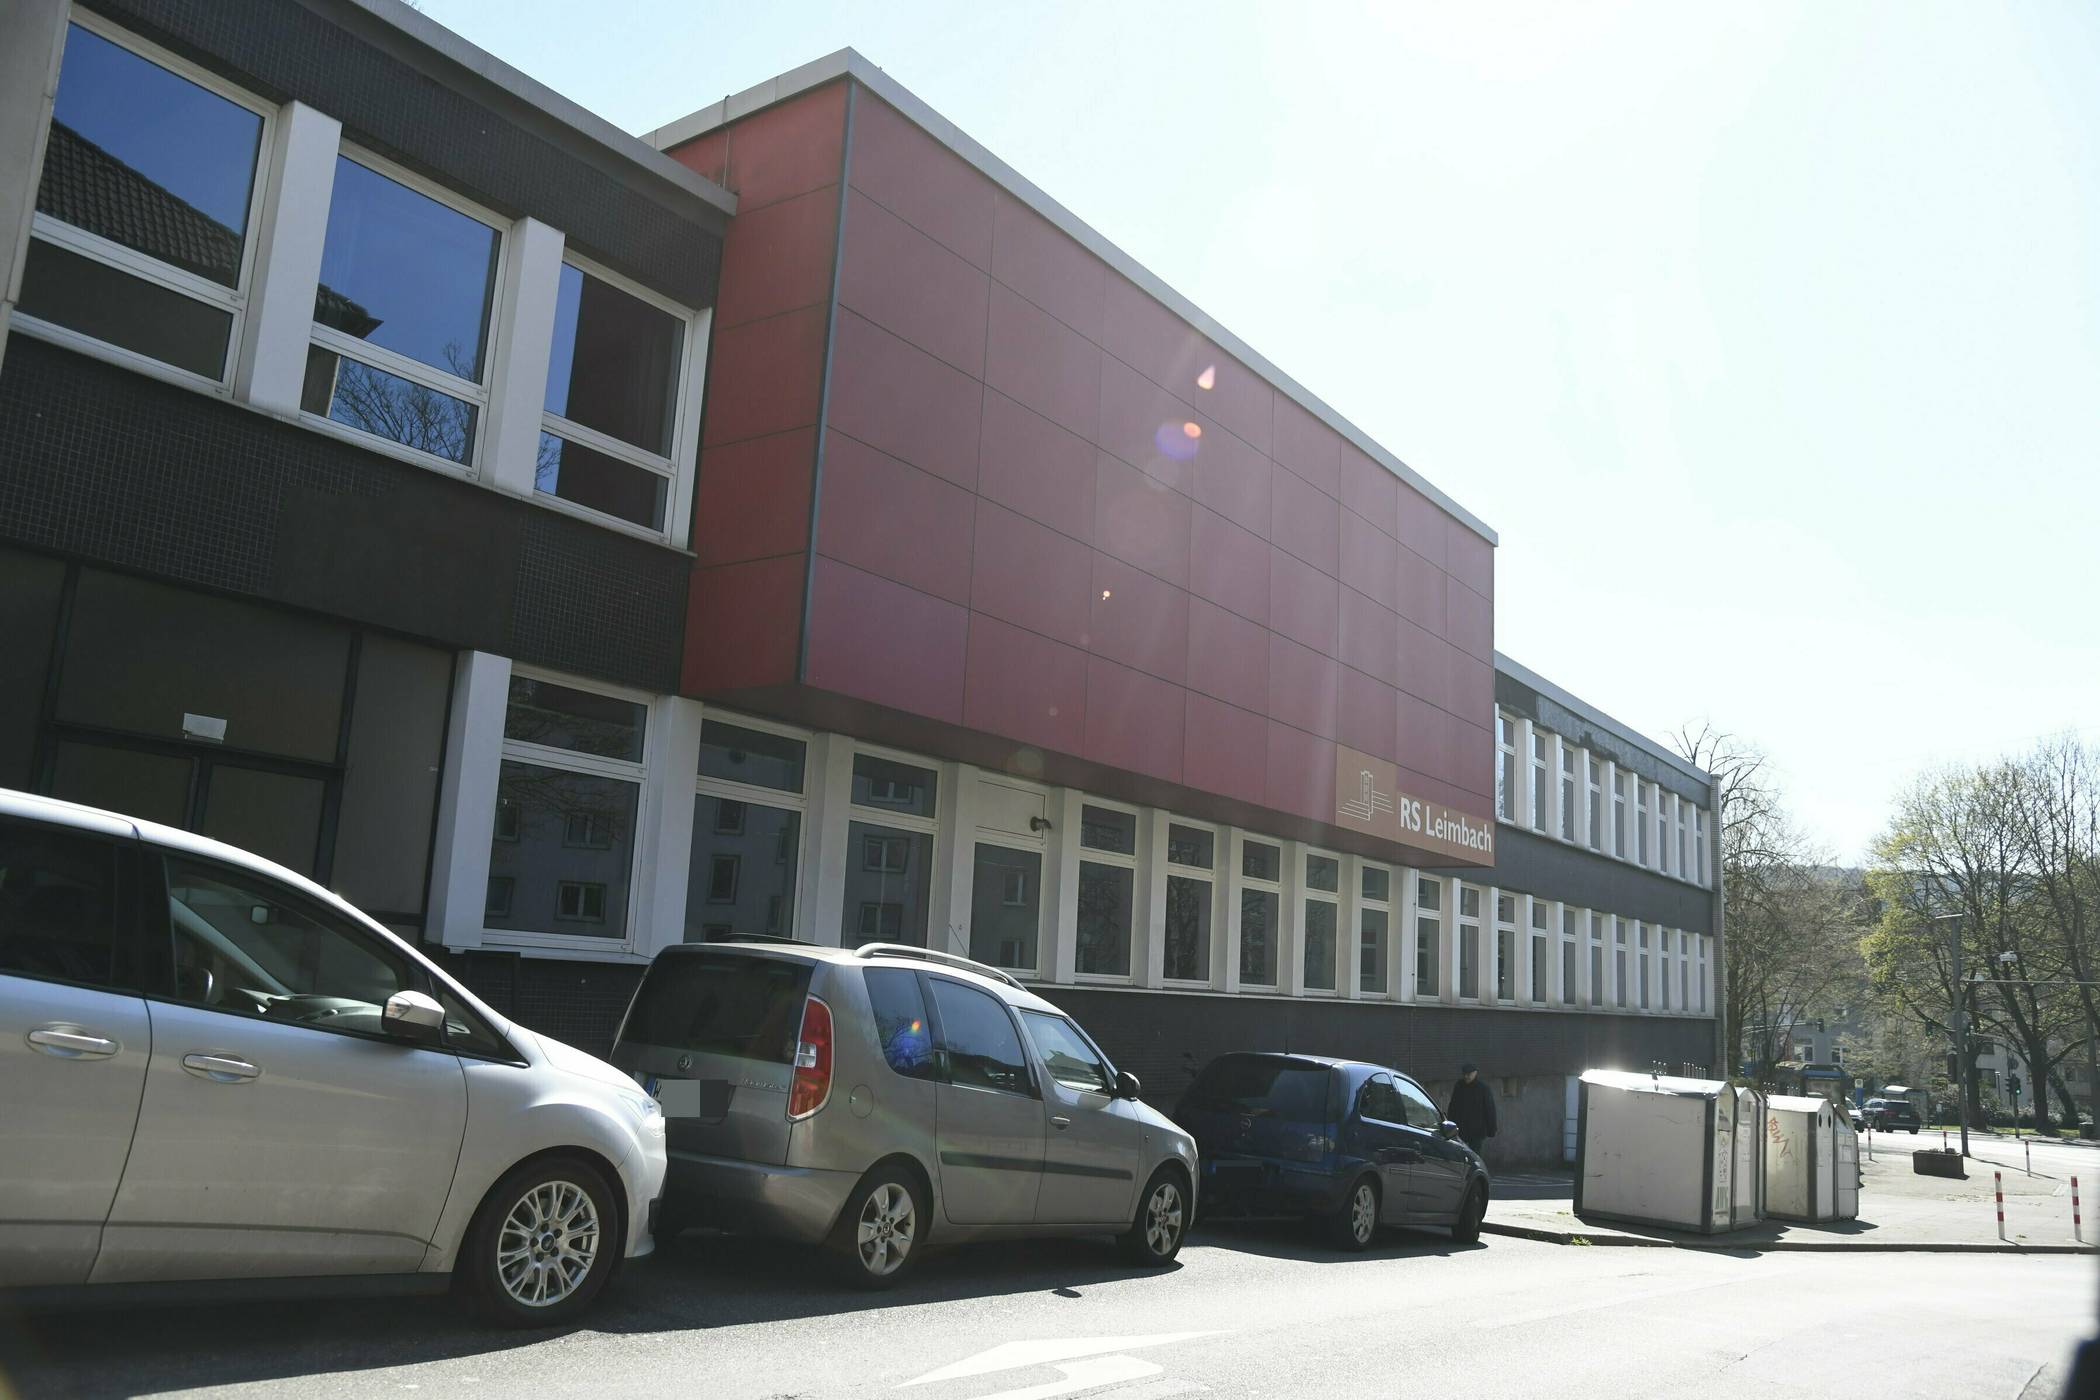  Die Realschule an der Leimbacher Straße in Barmen.  